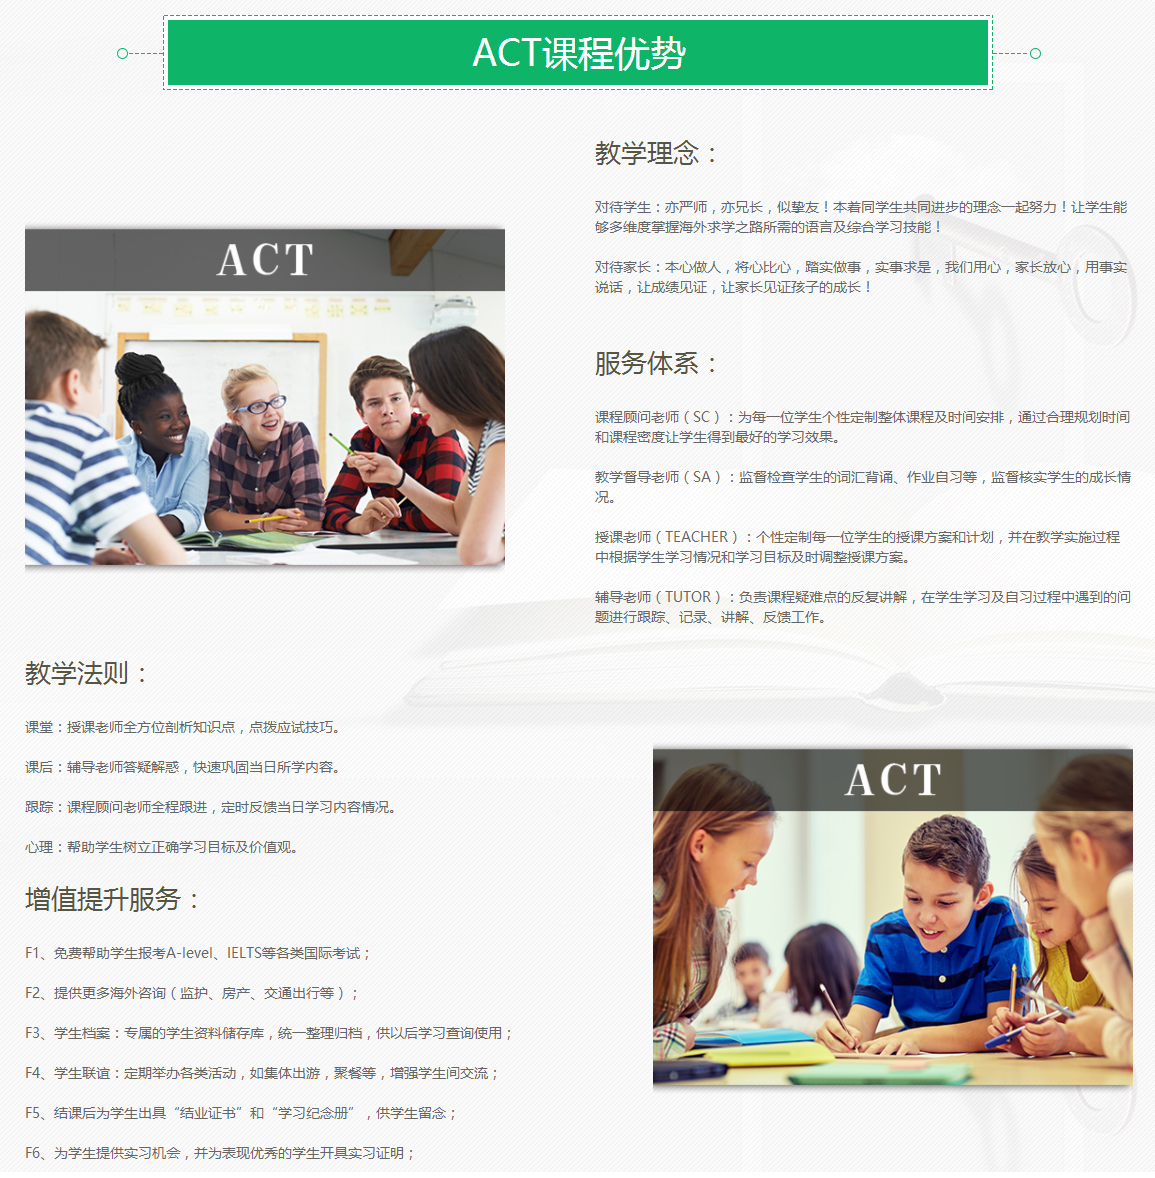 上尚国际教育ACT培训课程 